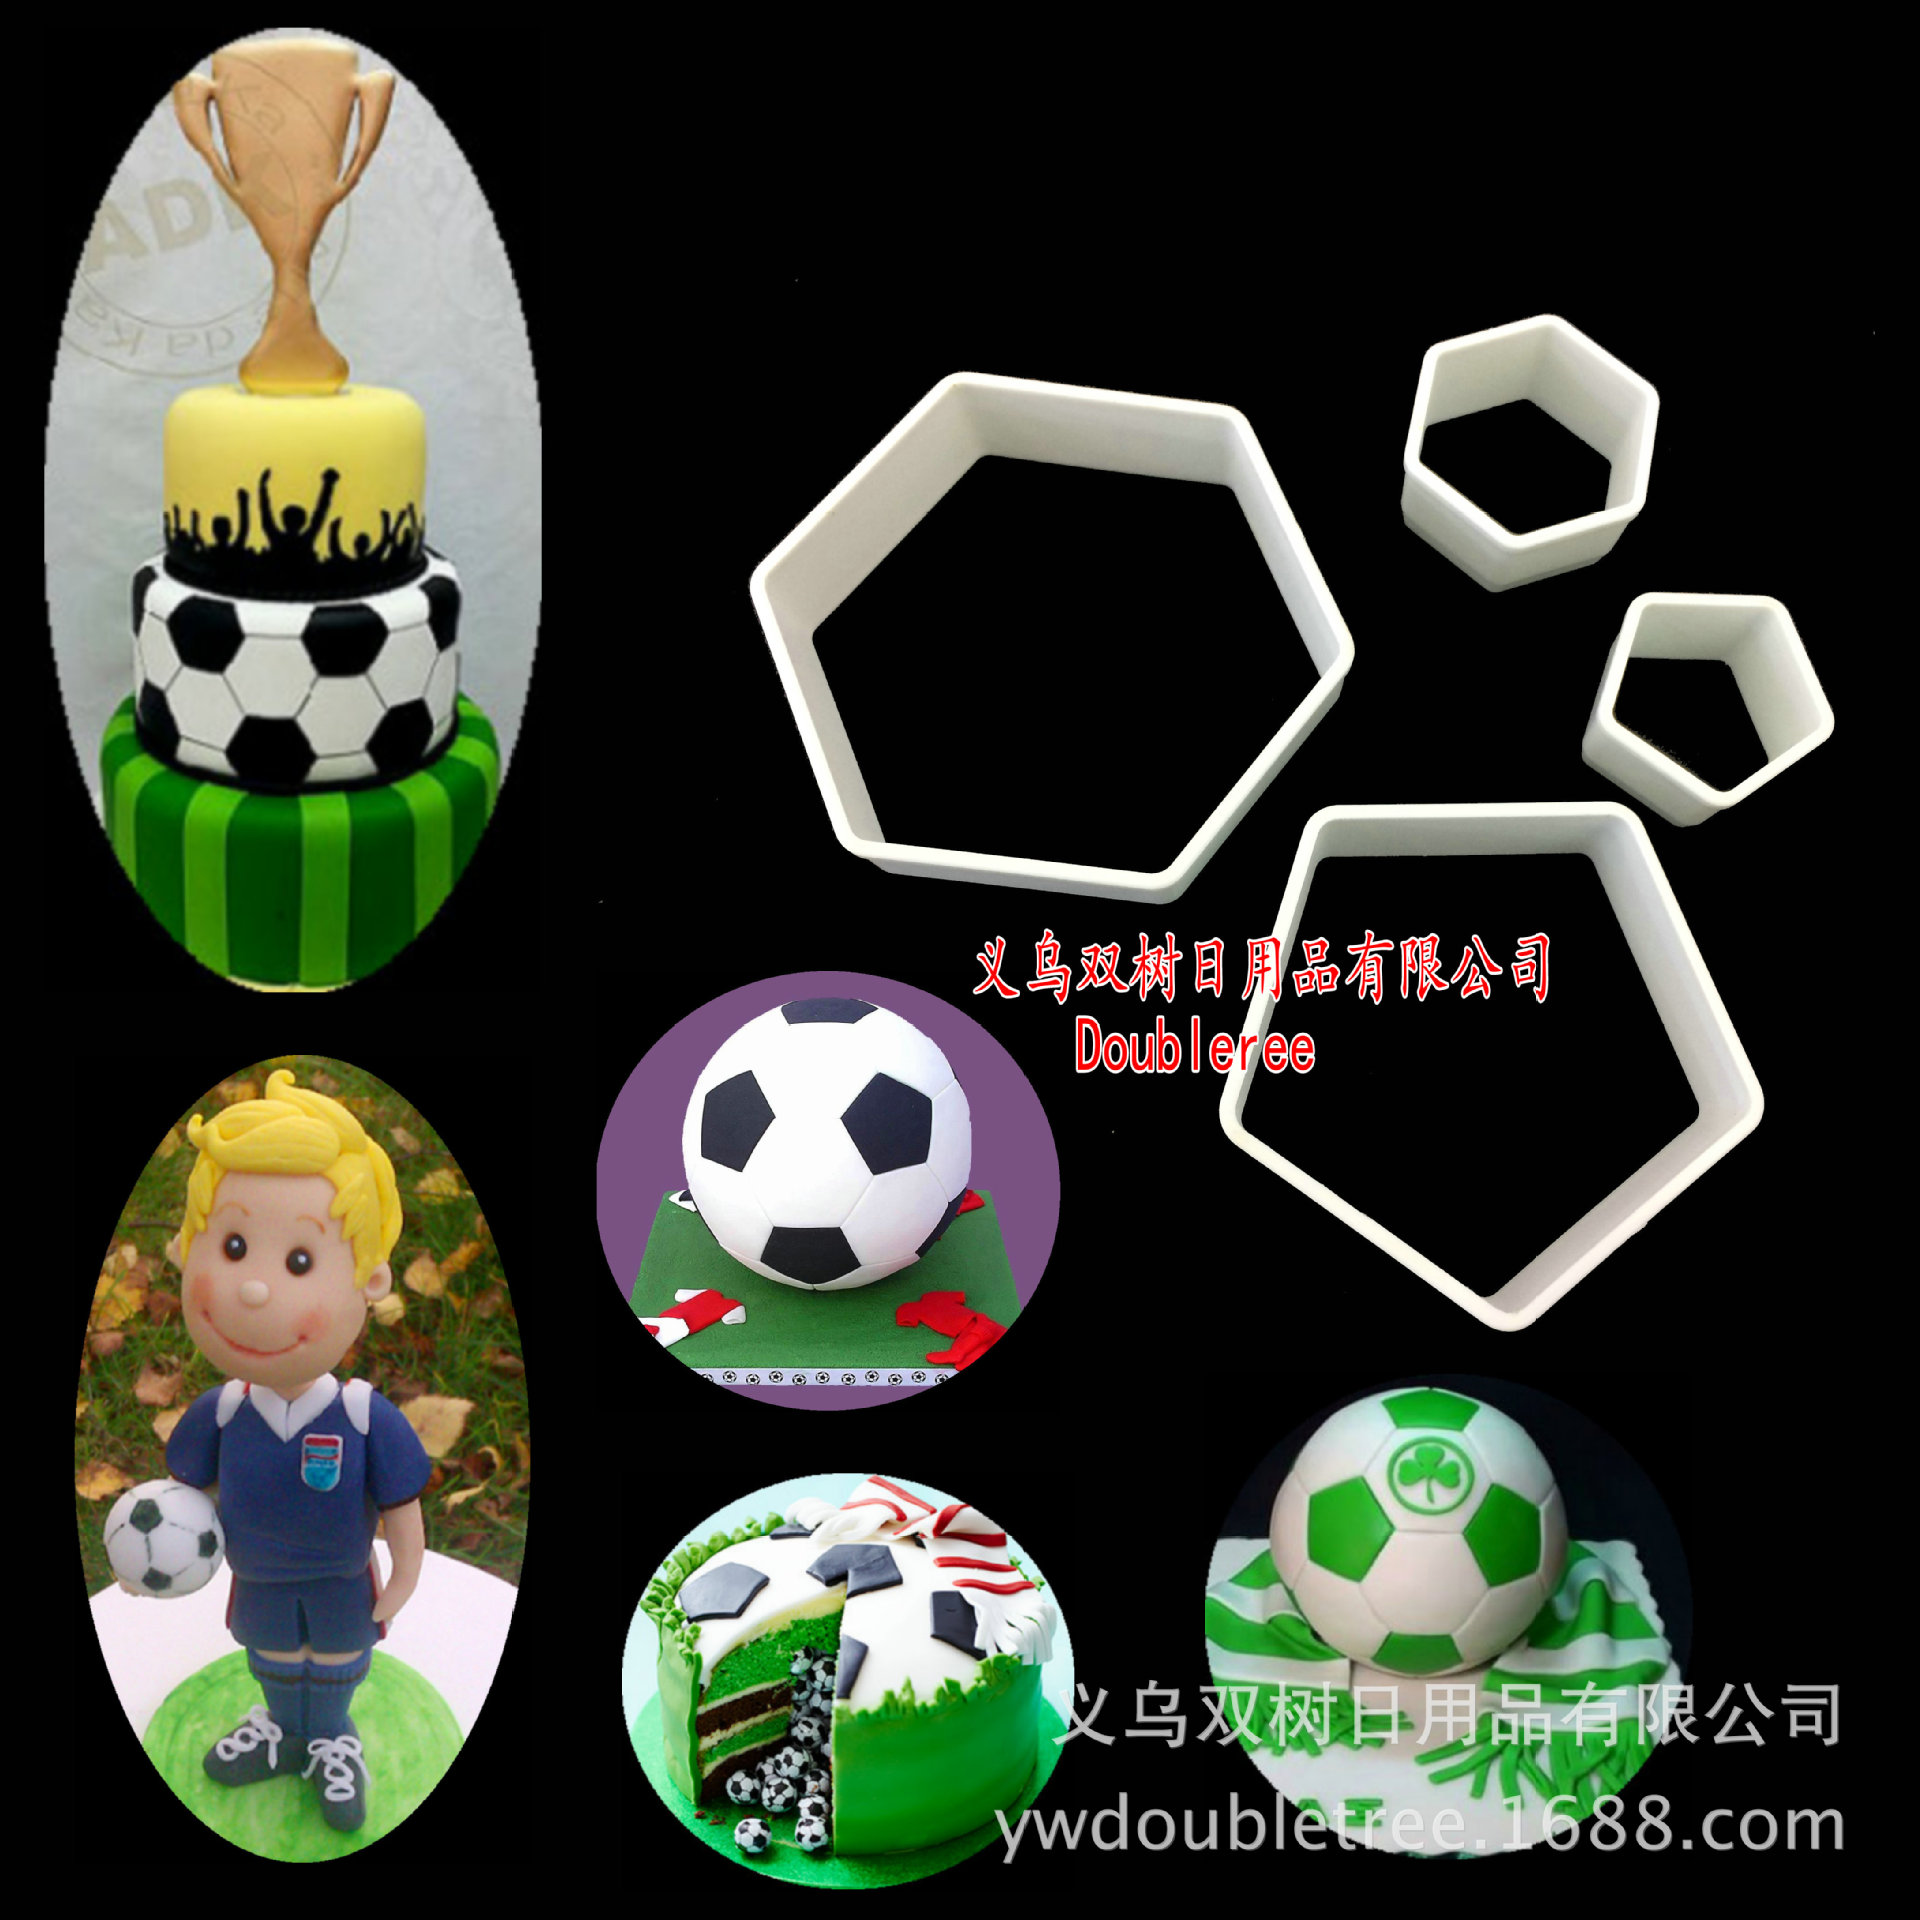 烘焙蛋糕装饰 双层足球主题插牌 男生足球运动潮流生日快乐插件-阿里巴巴